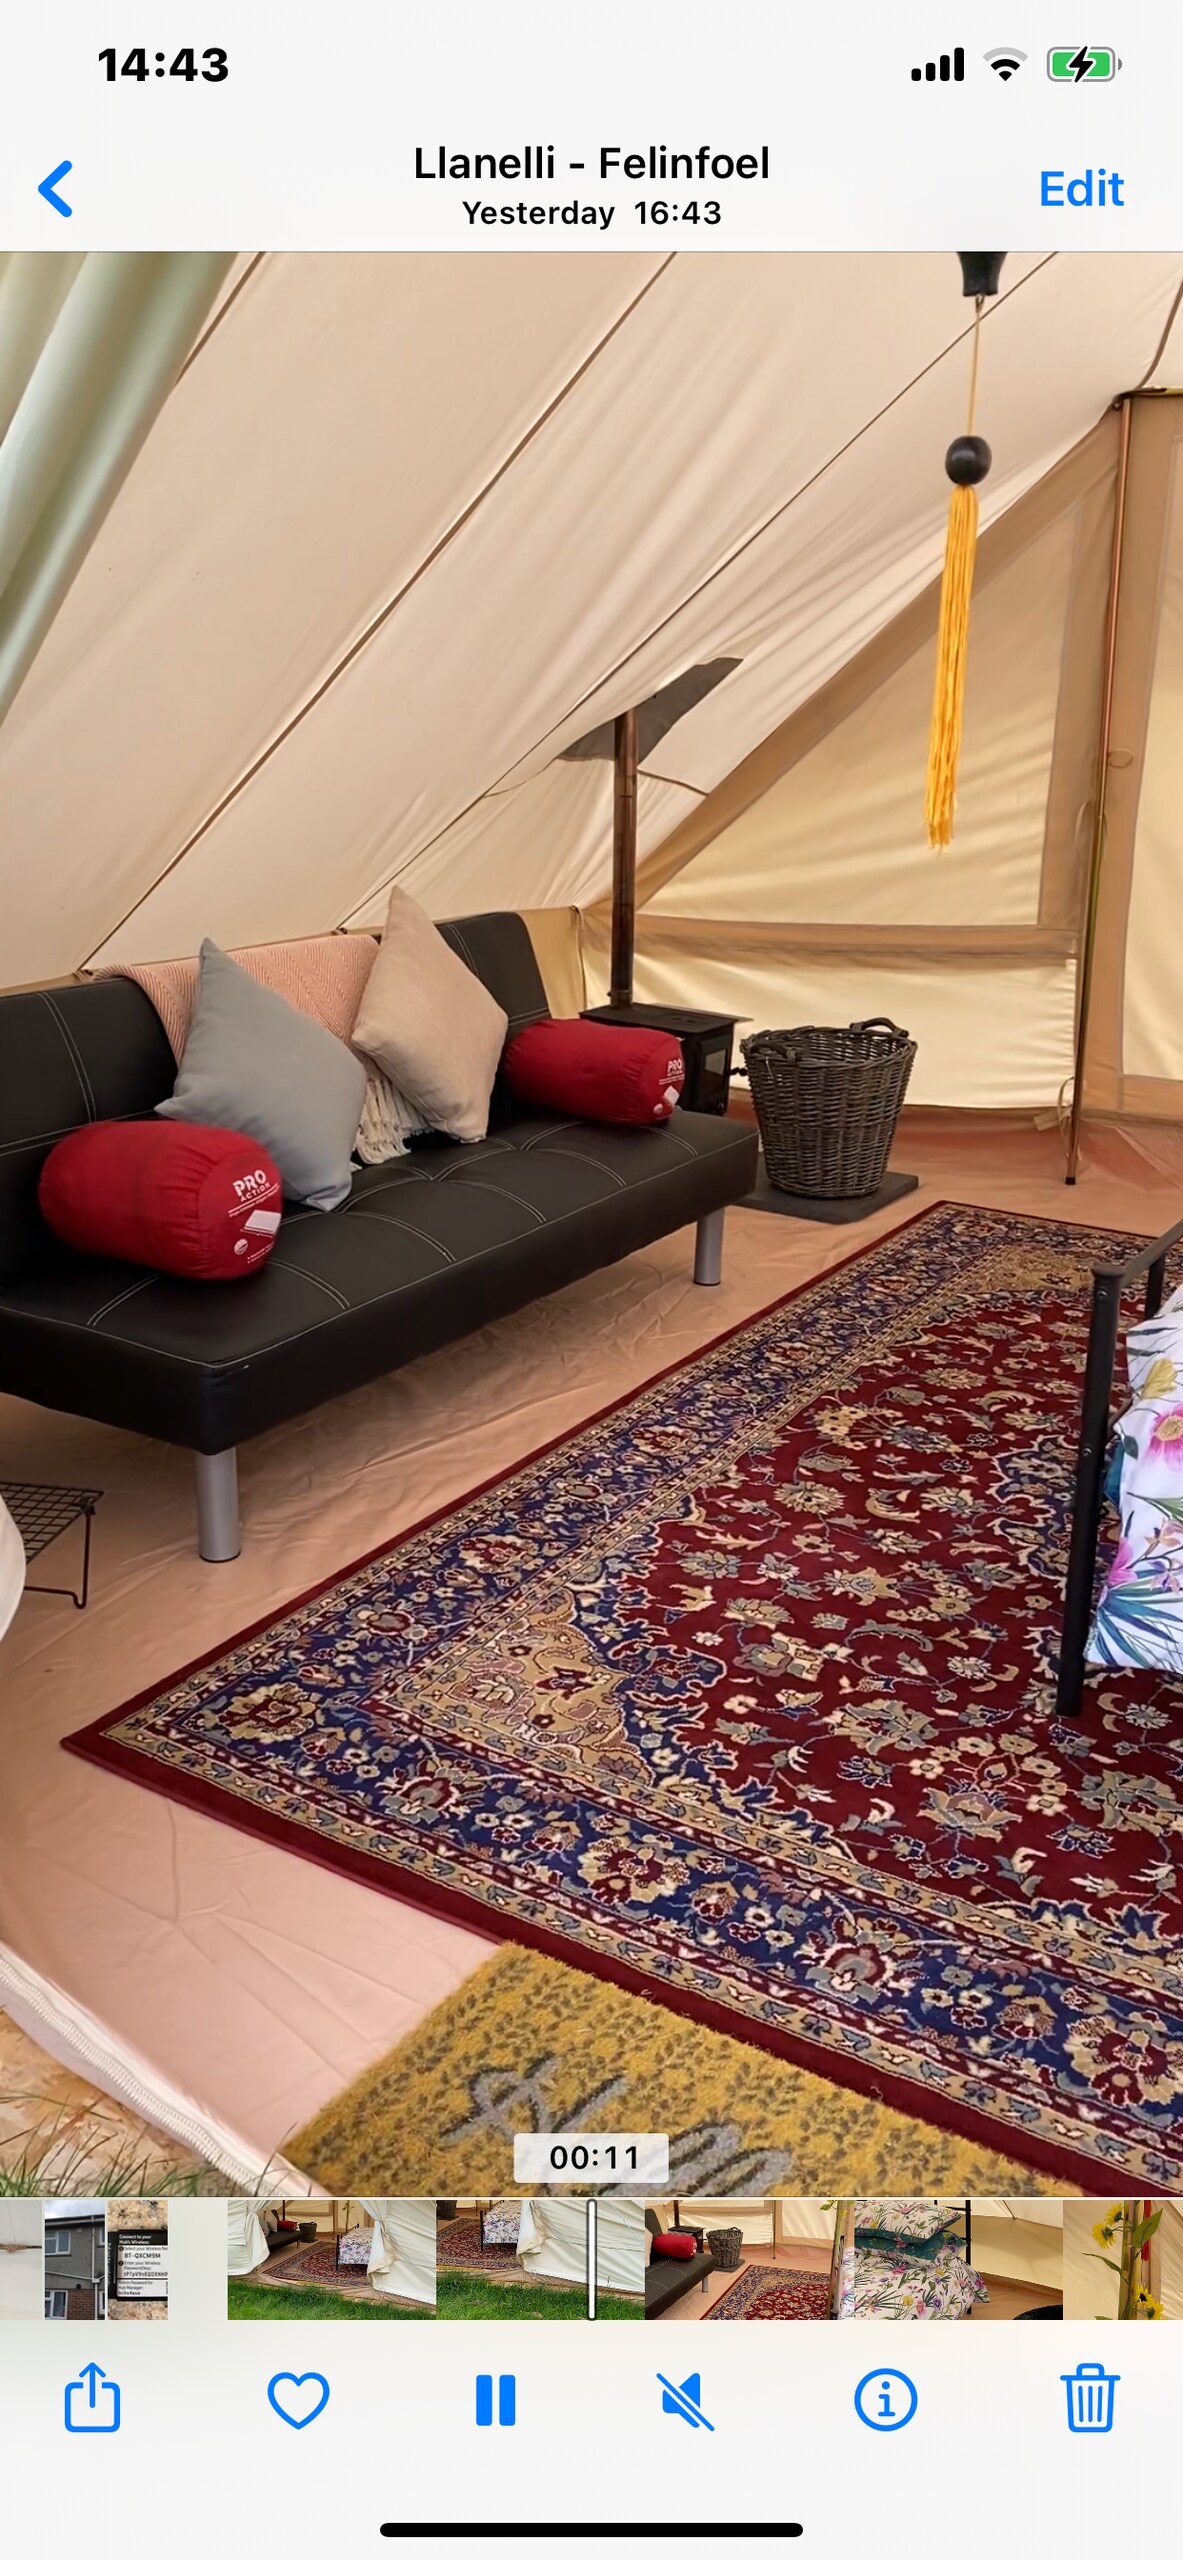 红色风筝帐篷温馨舒适、有趣且宽敞。